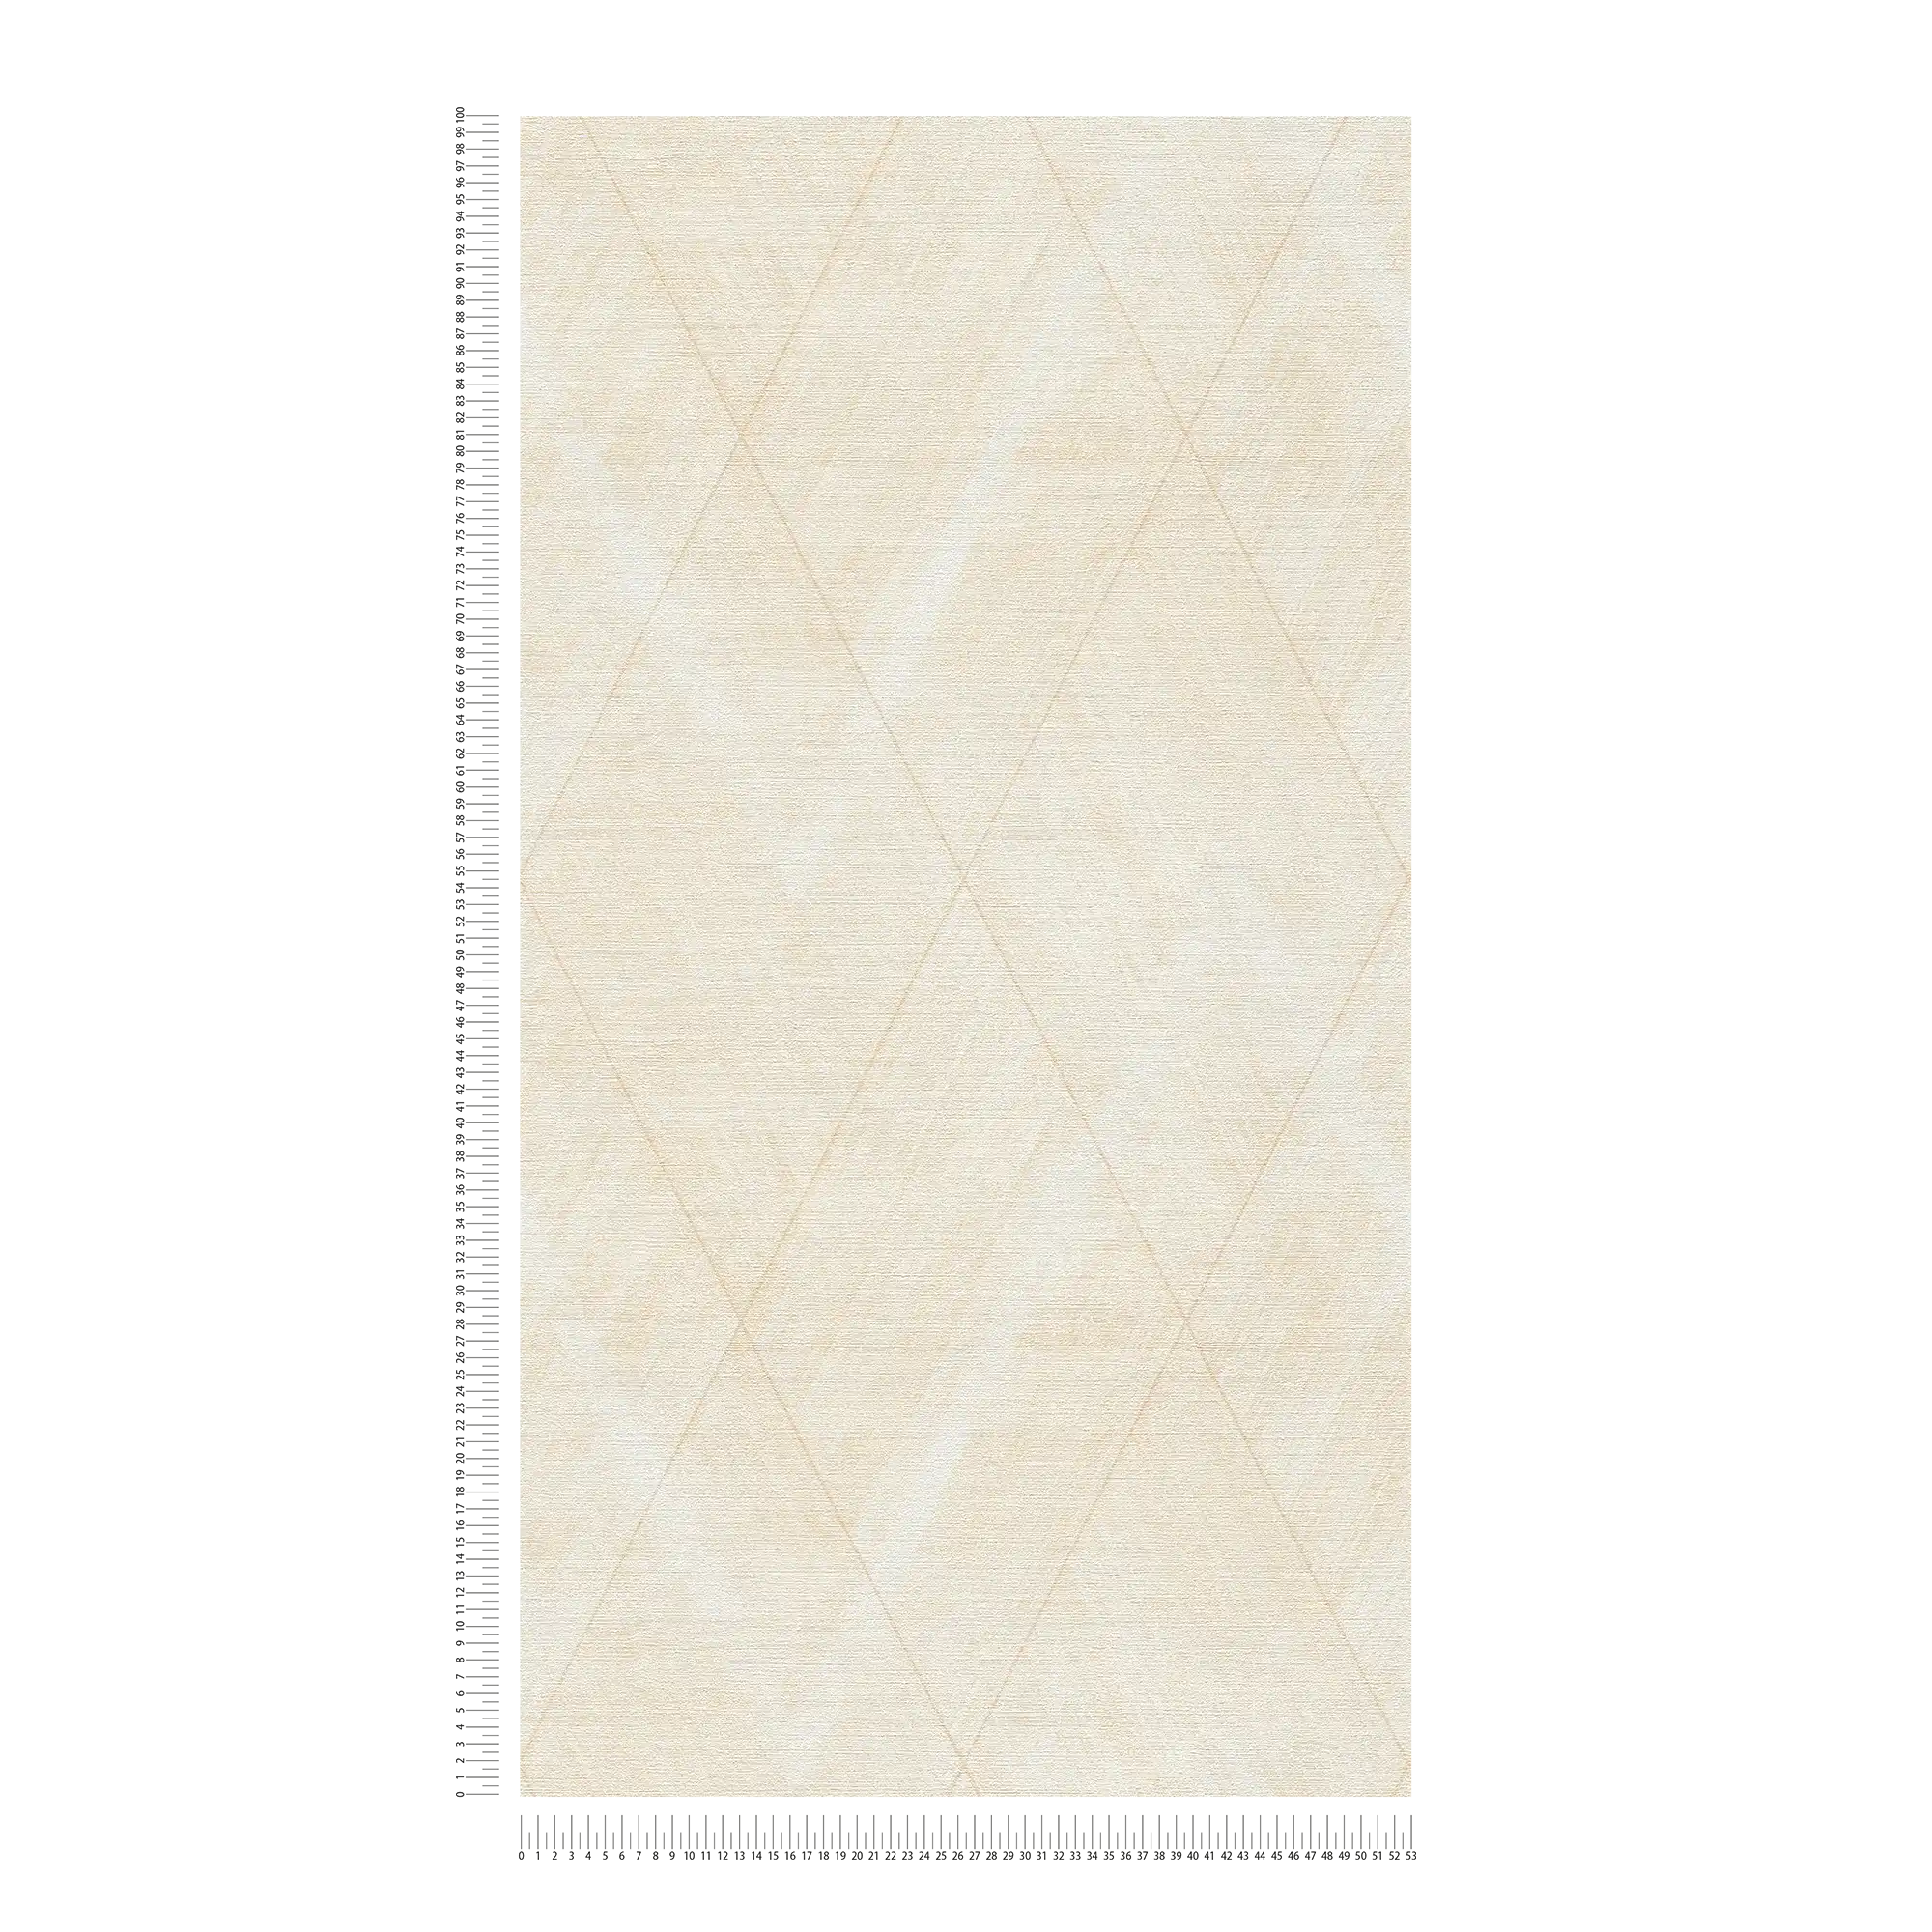             Papier peint losange aspect textile - métallique, crème, jaune
        